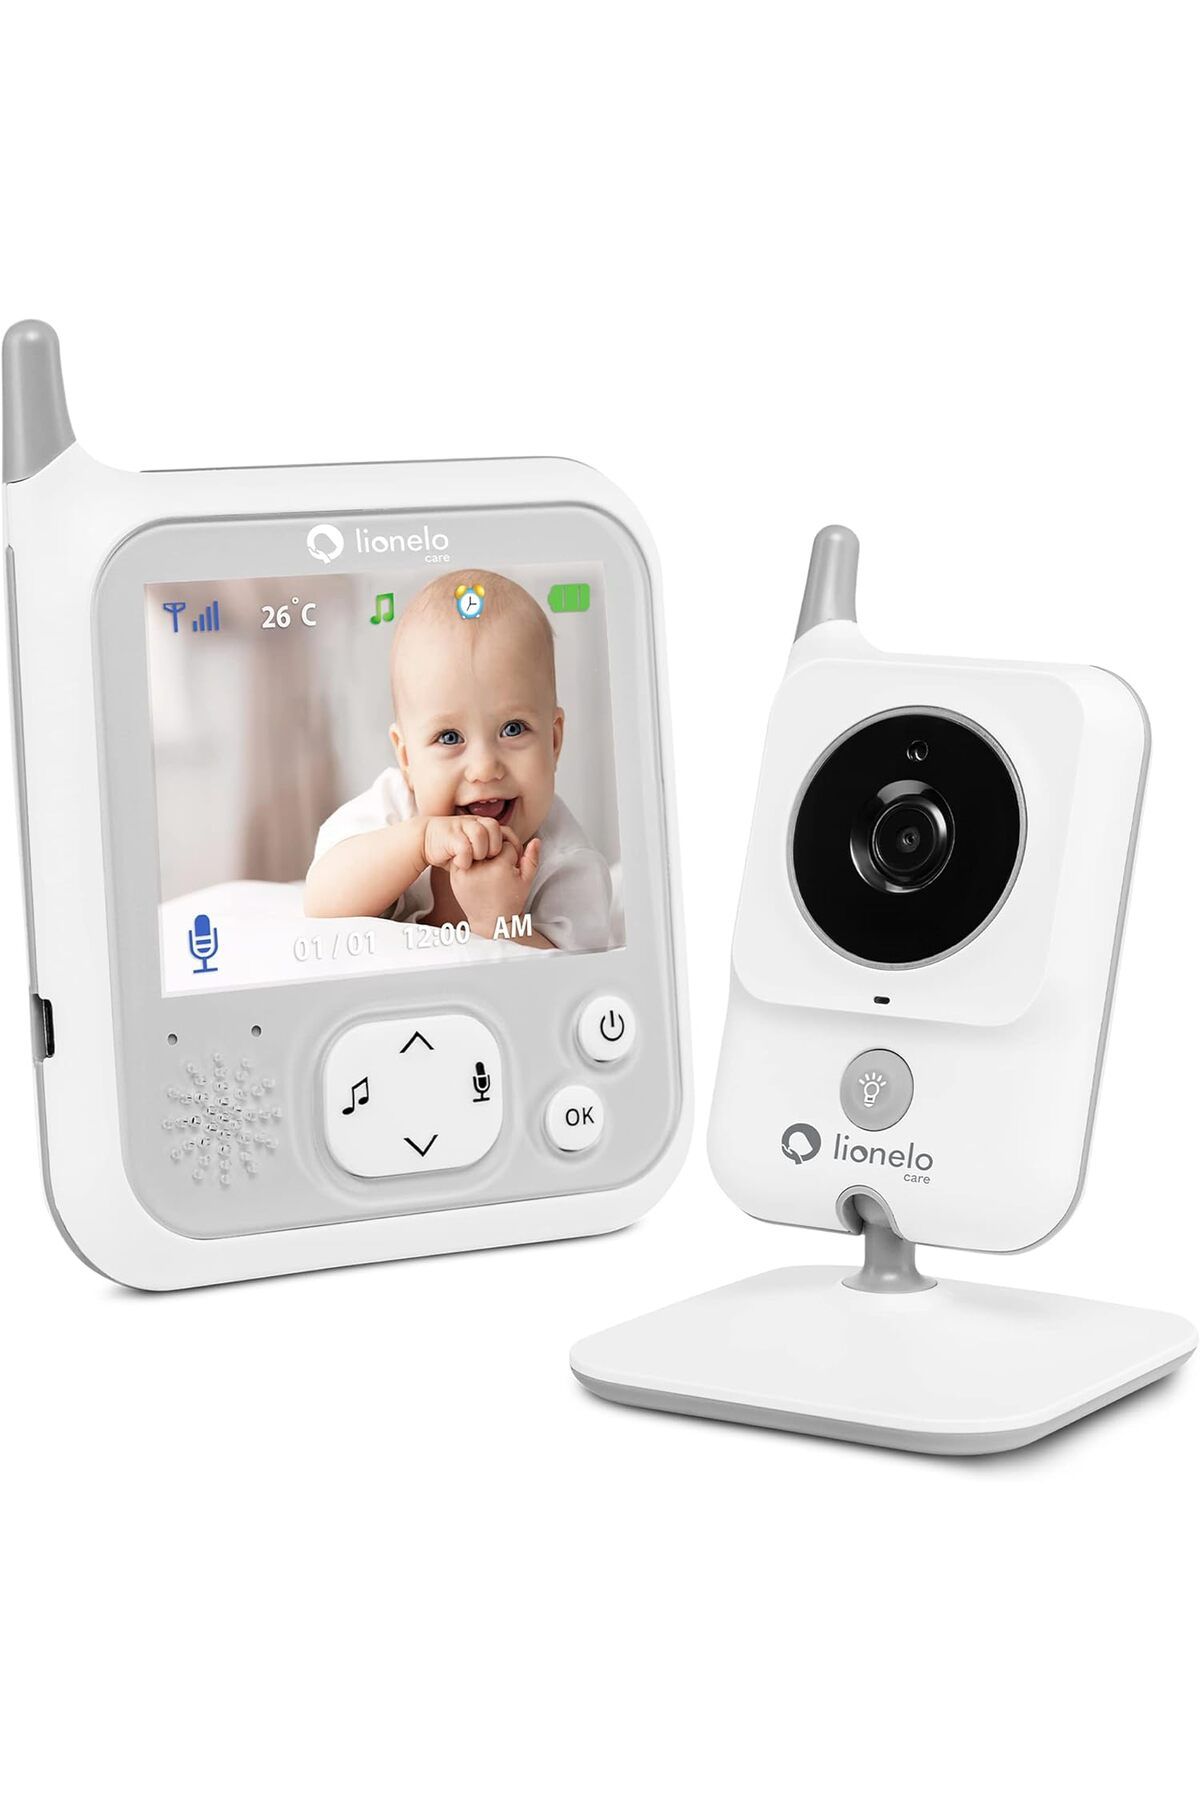 Lİonelo 3" inç LCD ekranlı bebek monitörü, Video ve ses, Gece modu, İki yönlü iletişim, 260m menzil